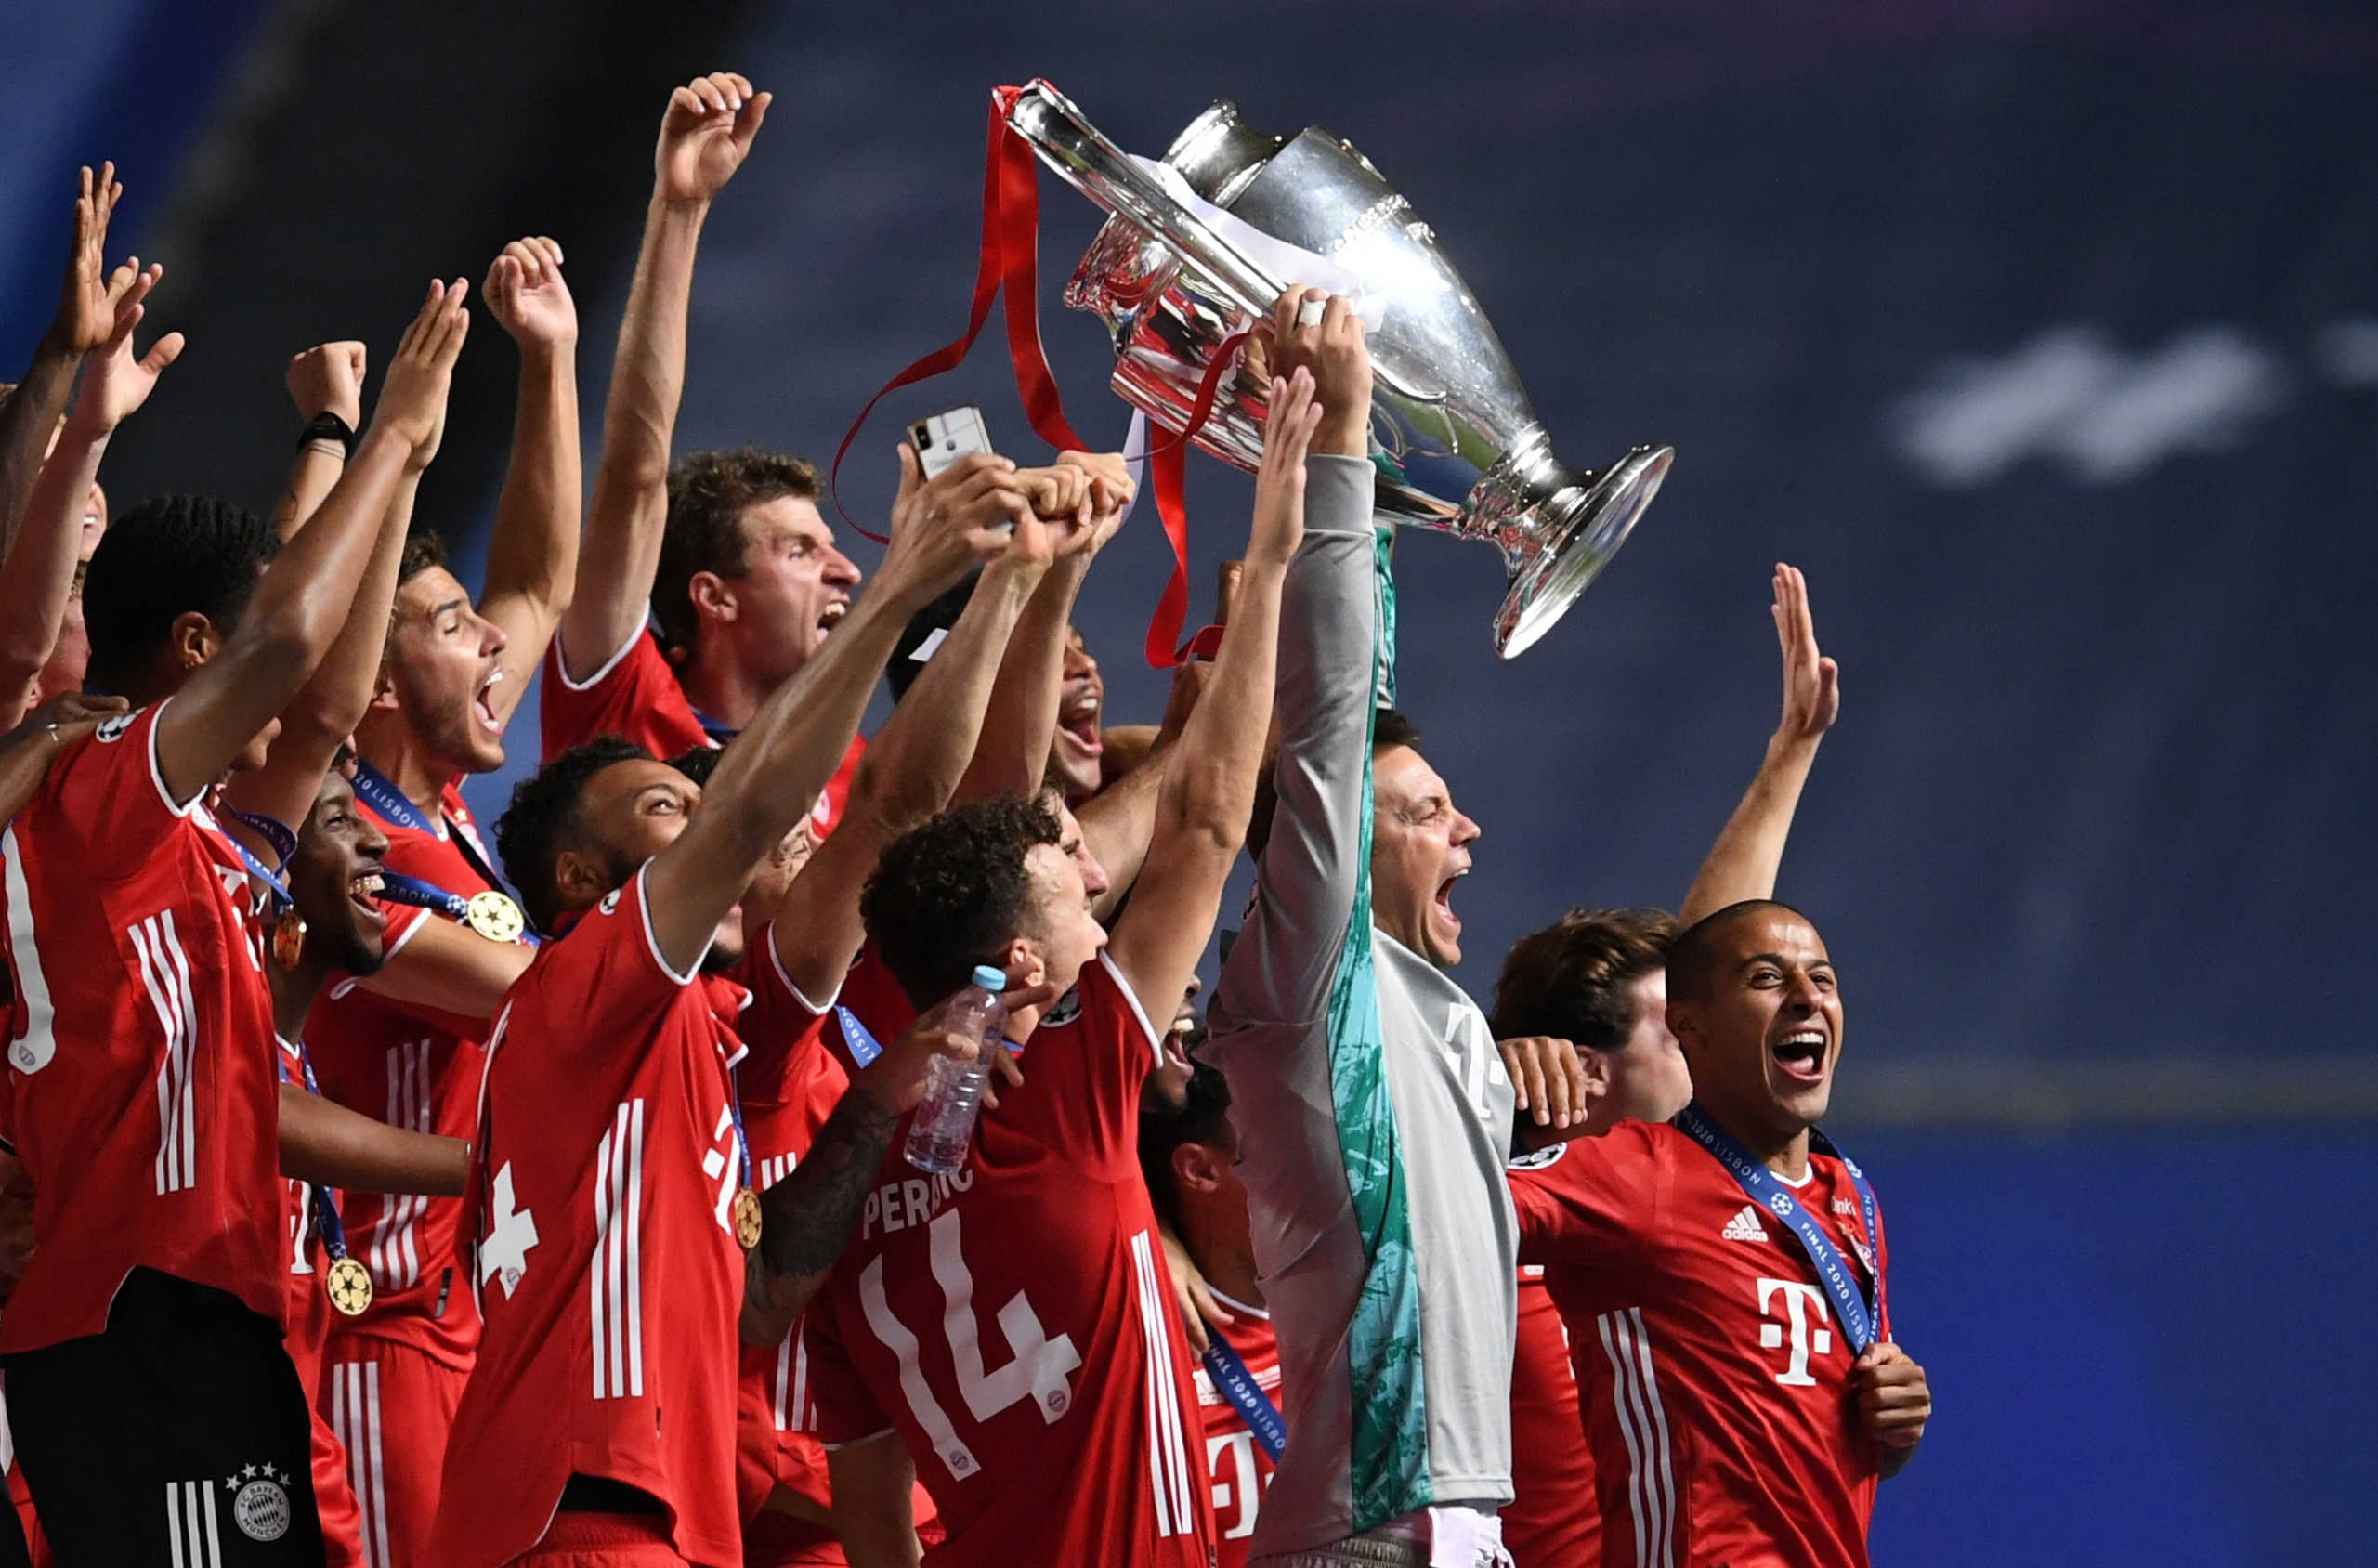 Τελικός Champions League: Ο Νόιερ σήκωσε την κούπα! Πρωταθλήτρια Ευρώπης η Μπάγερν (vid)